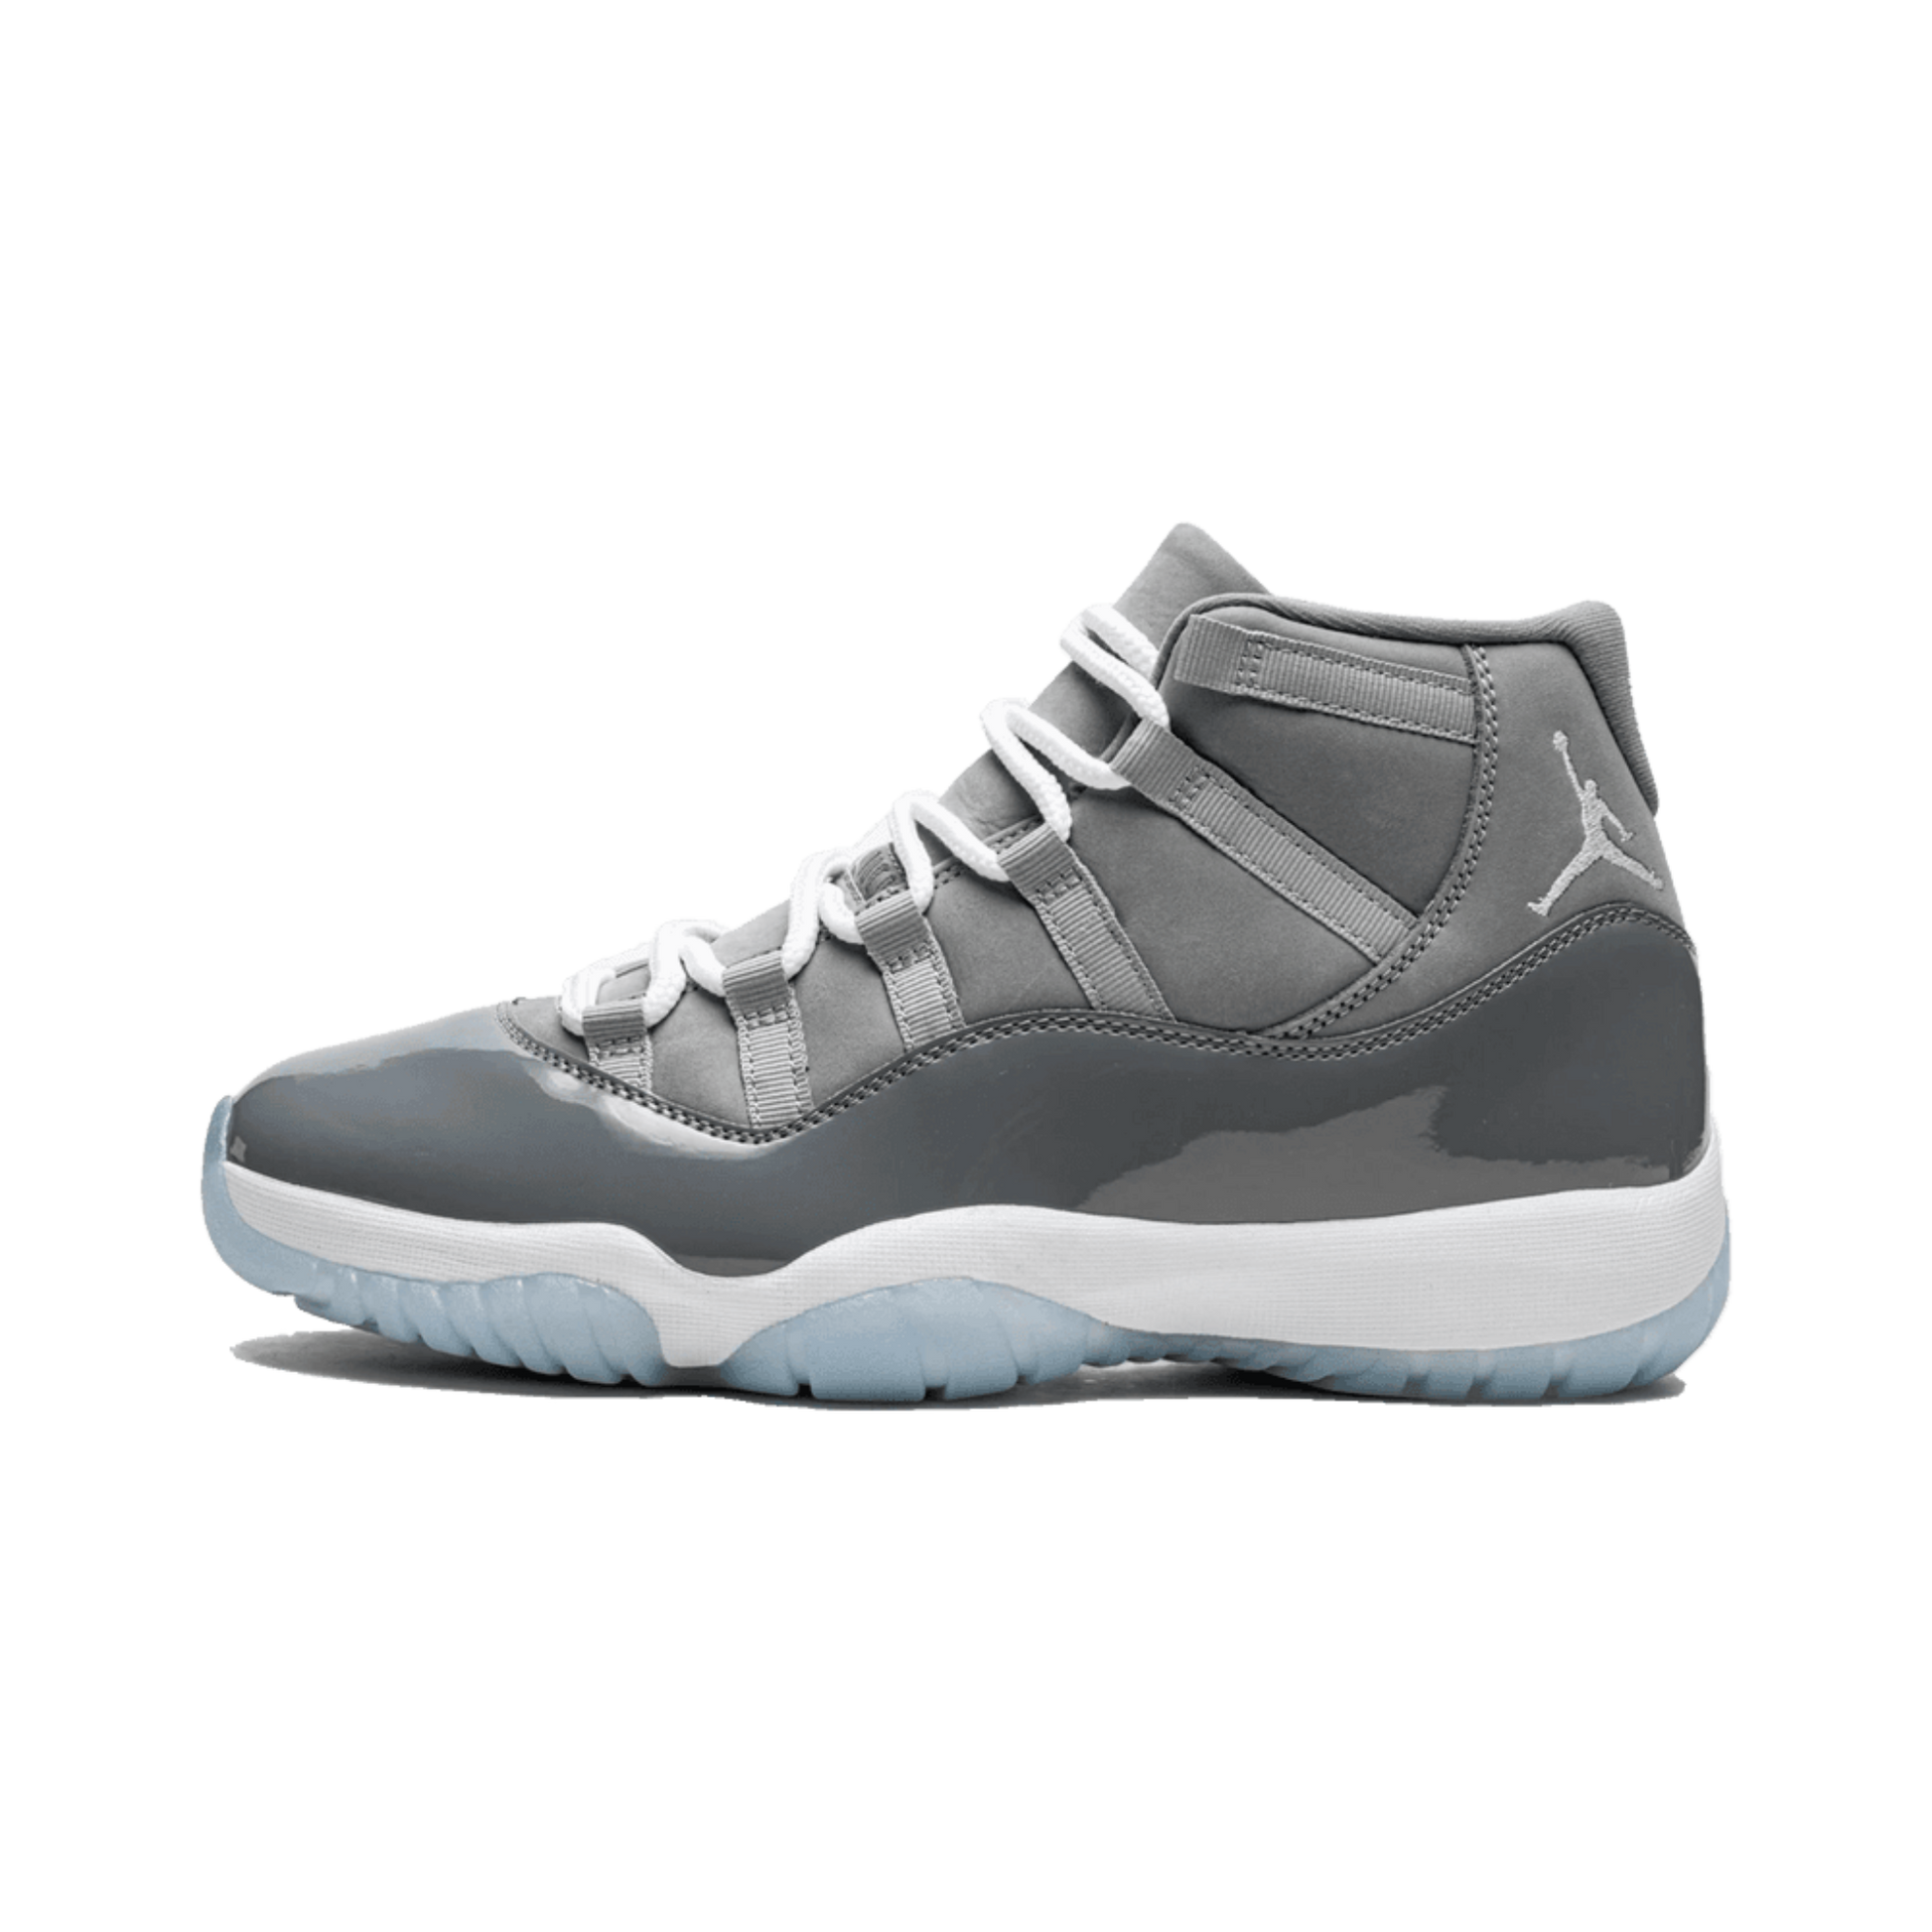 Jordan 11 Retro Cool Grey (2021) CT8012-005 